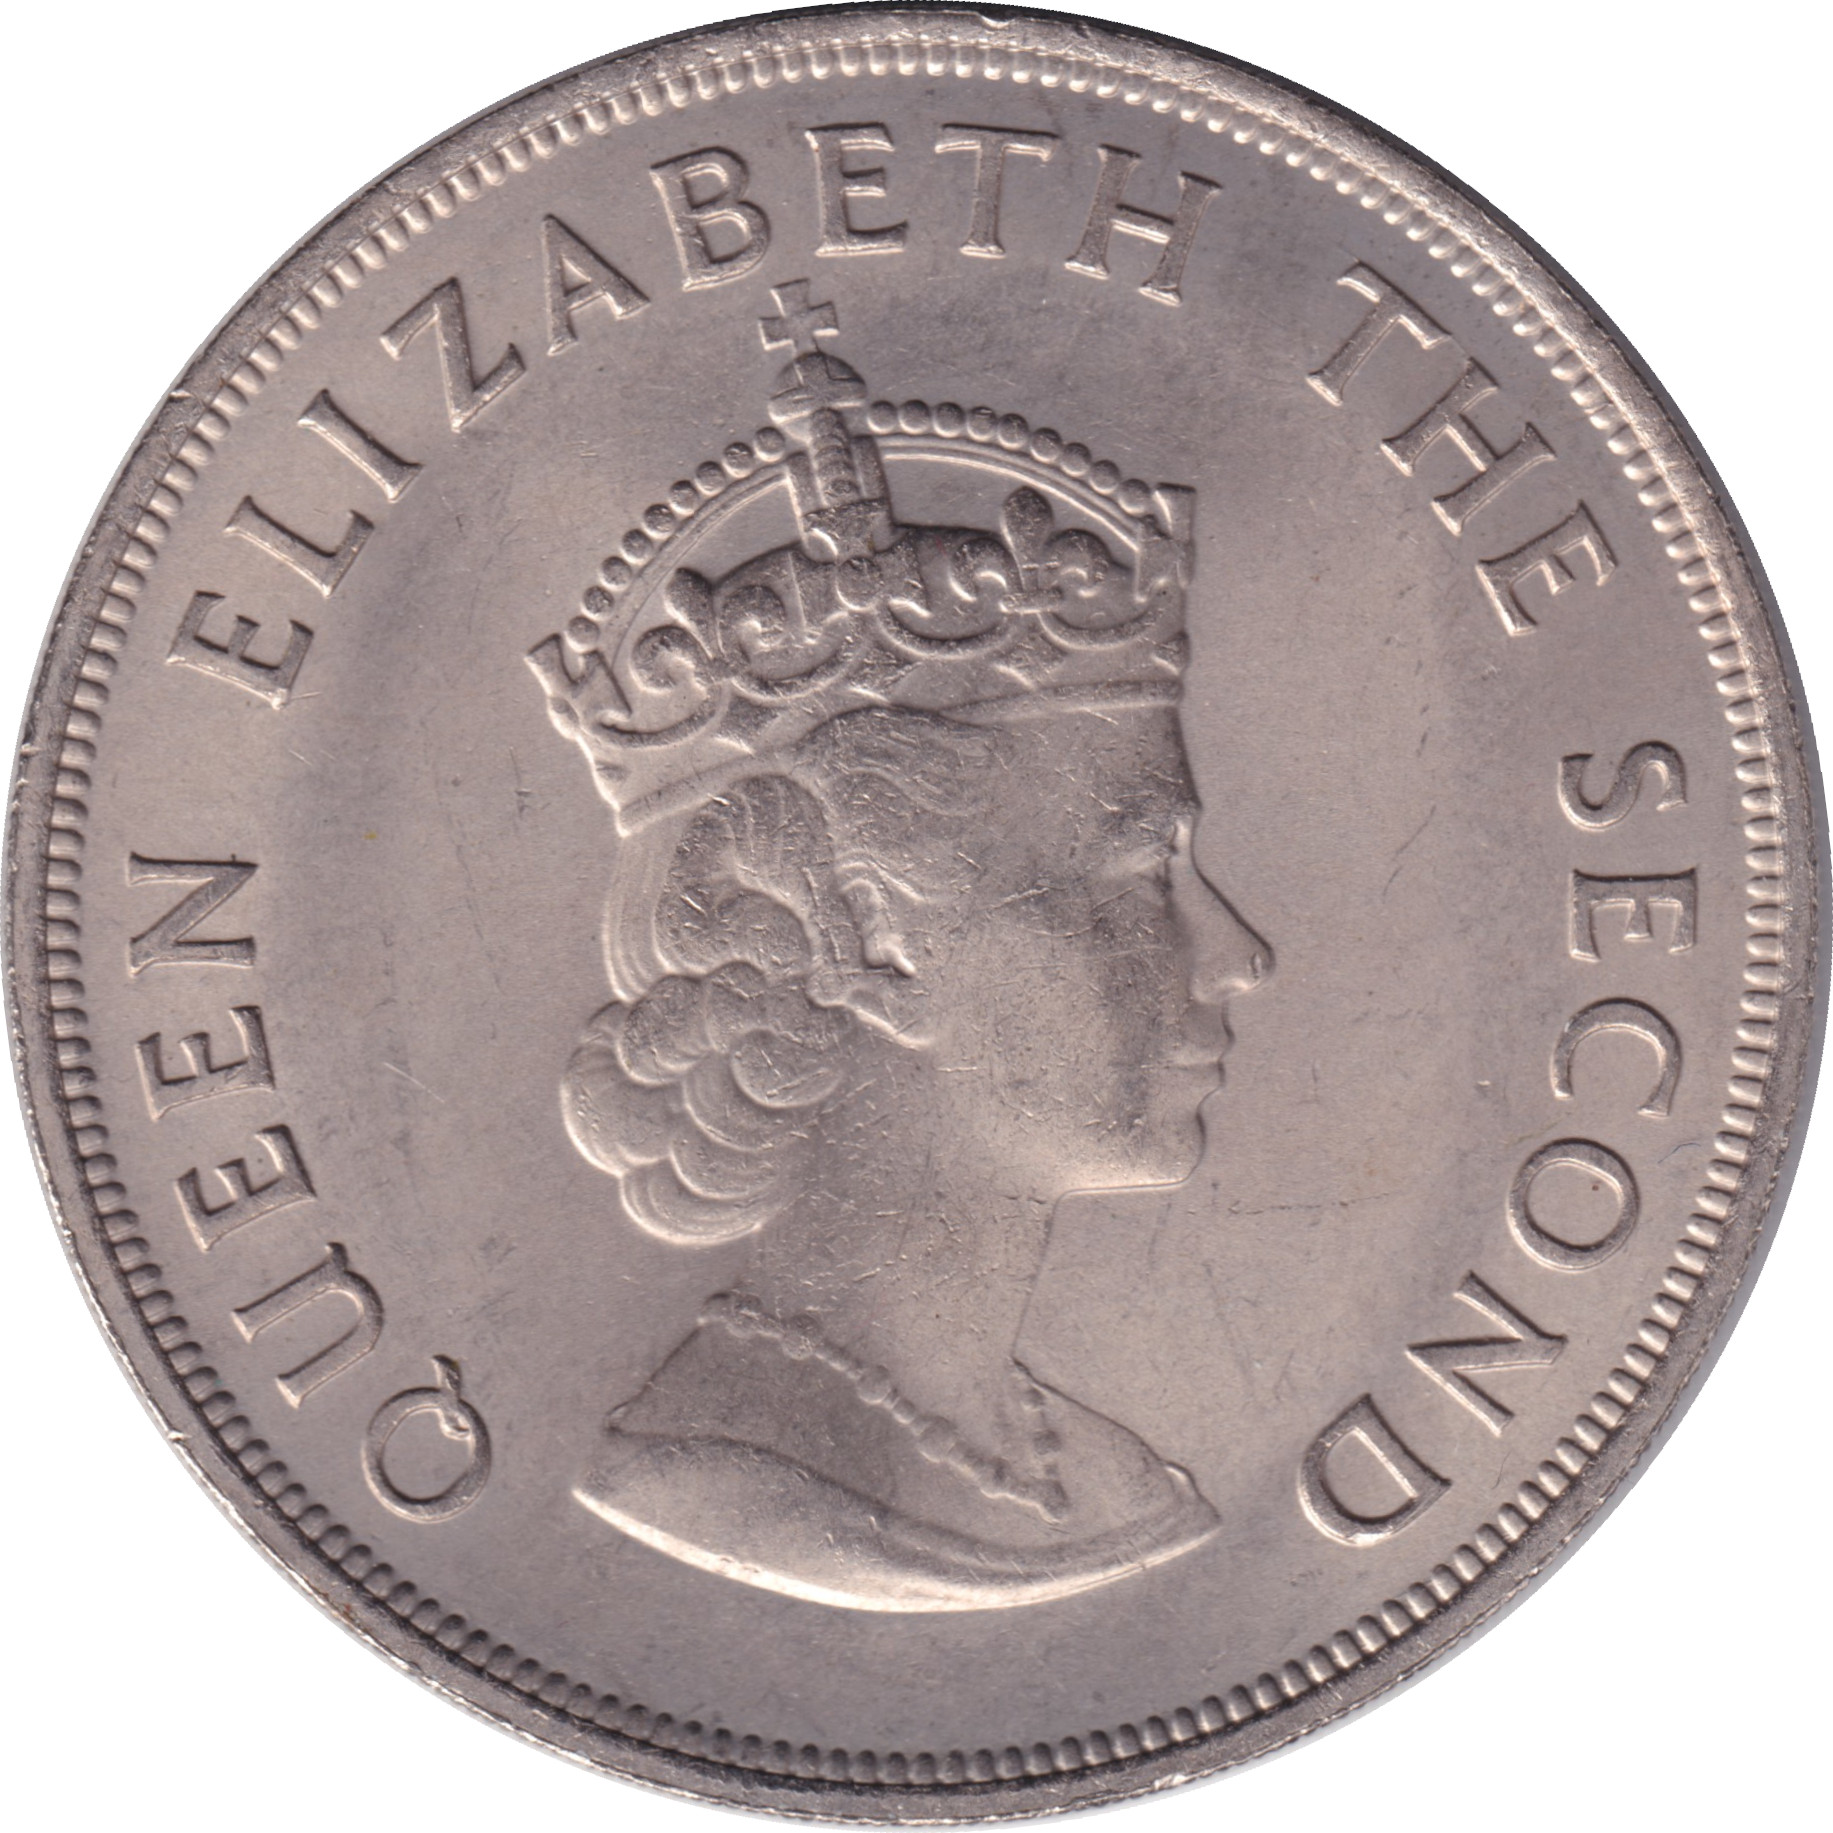 5 shillings - Conquête normande - 1000 ans